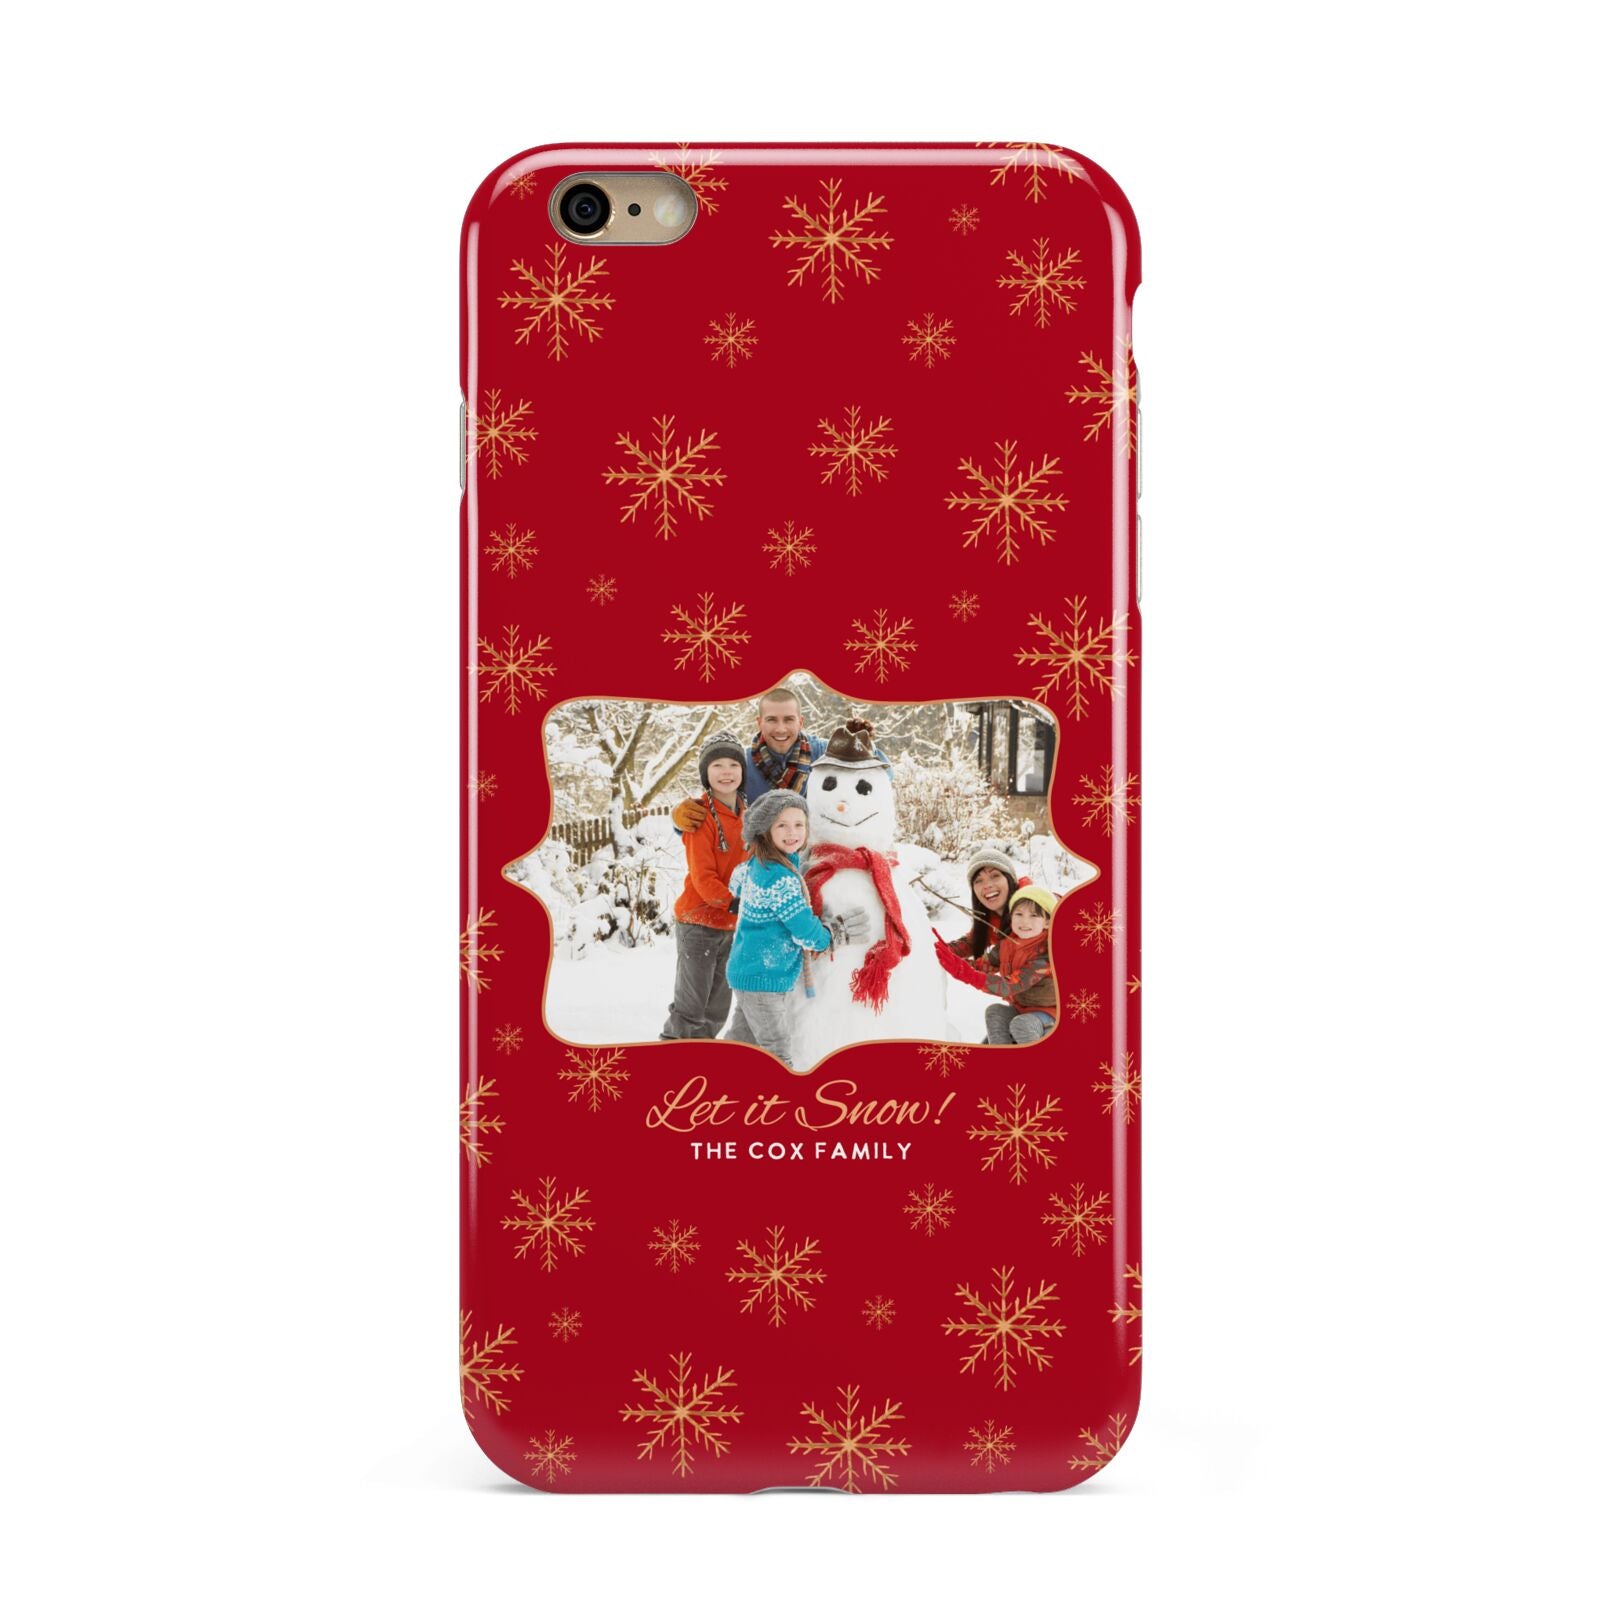 Let it Snow Christmas Photo Upload Apple iPhone 6 Plus 3D Tough Case